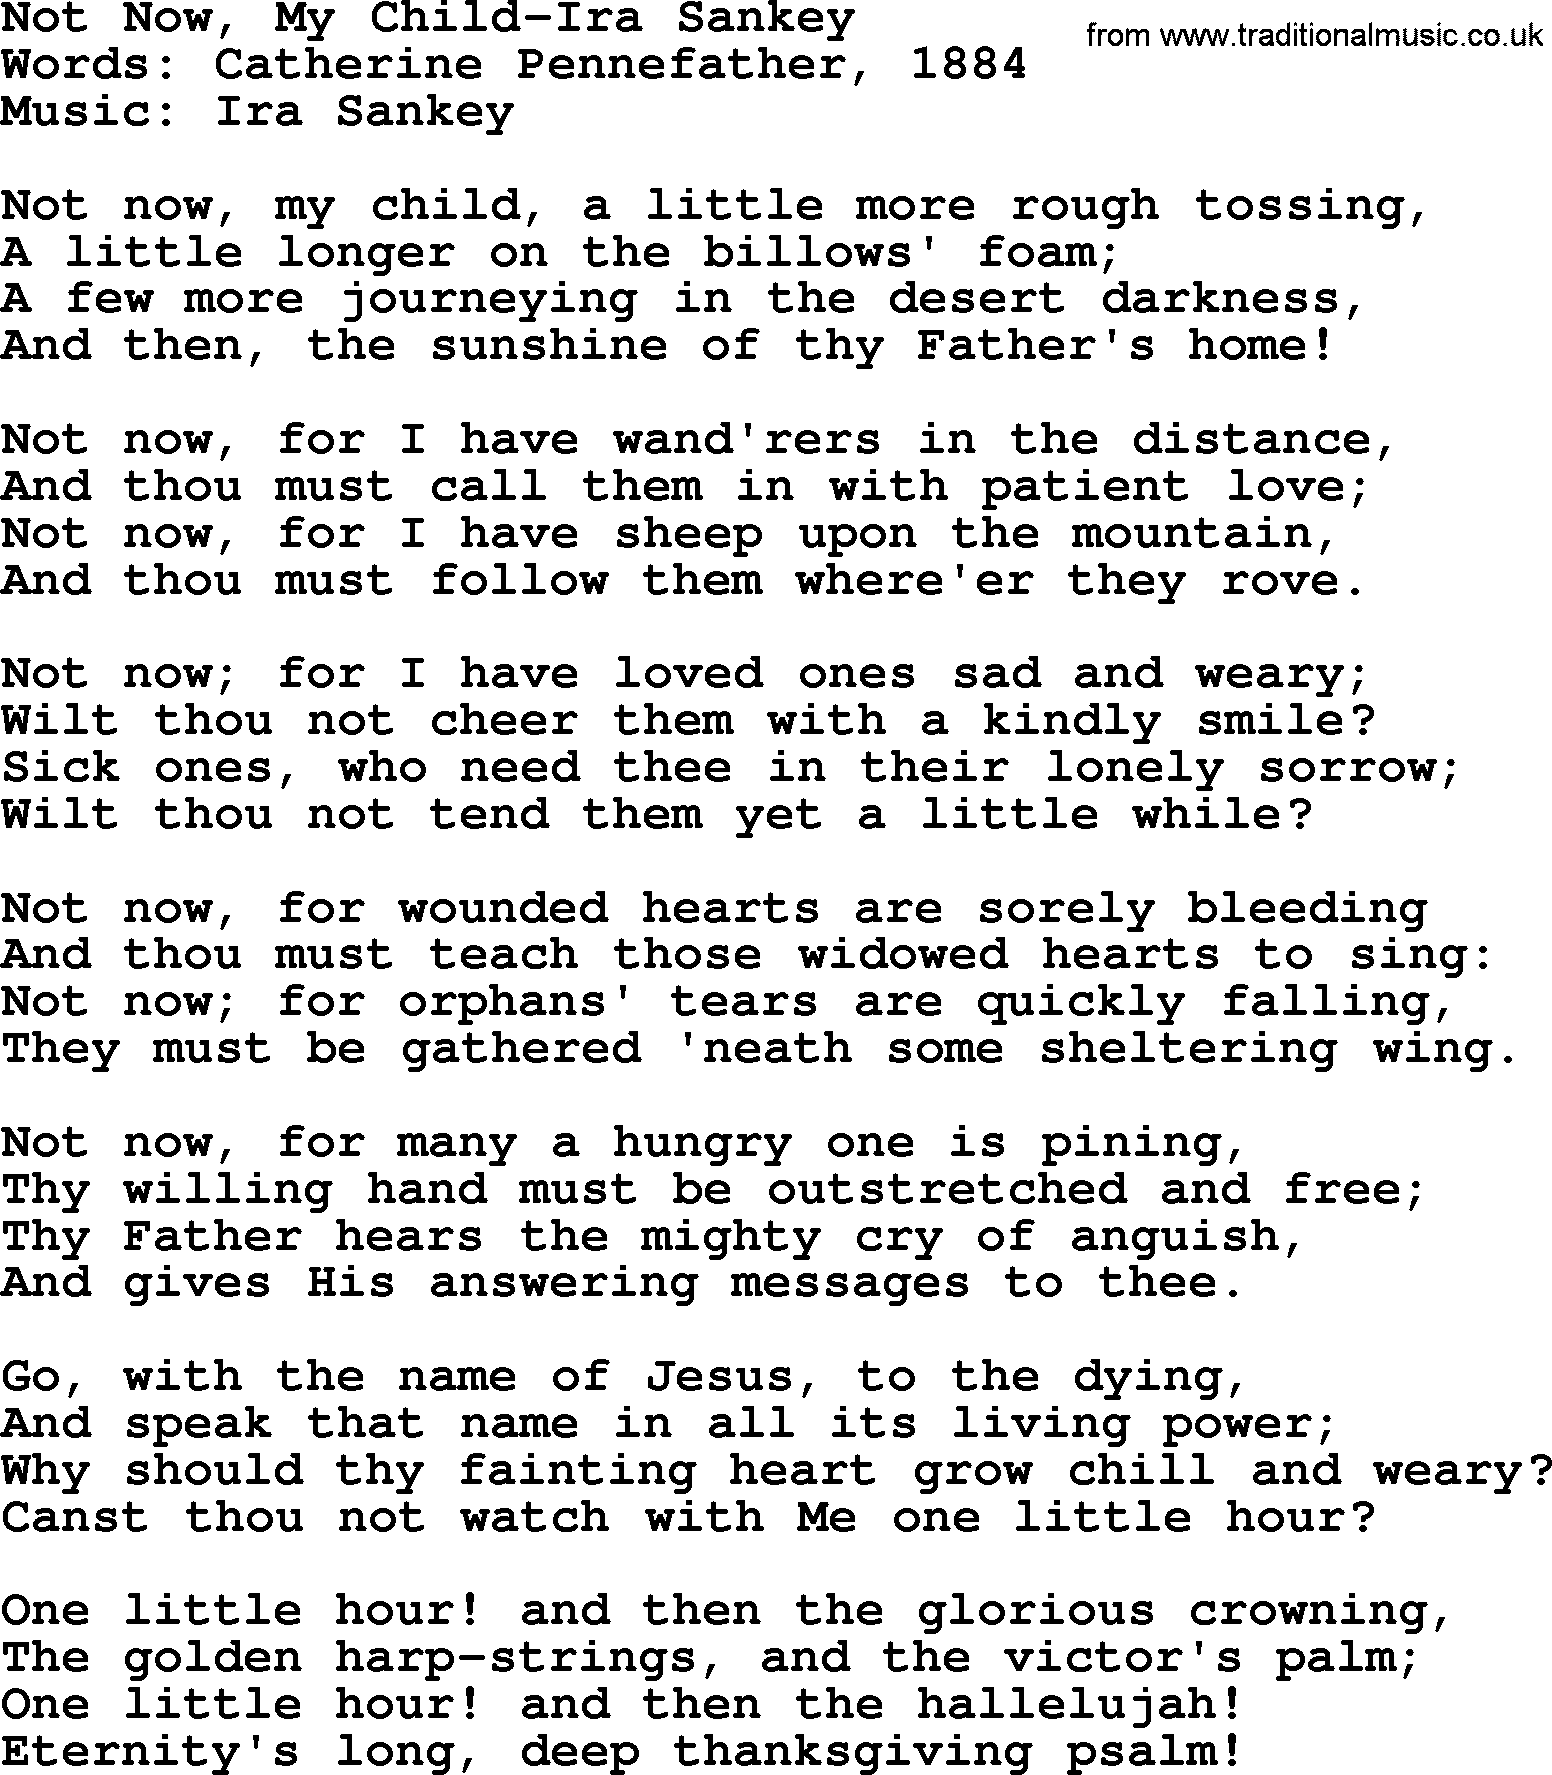 Ira Sankey hymn: Not Now, My Child-Ira Sankey, lyrics